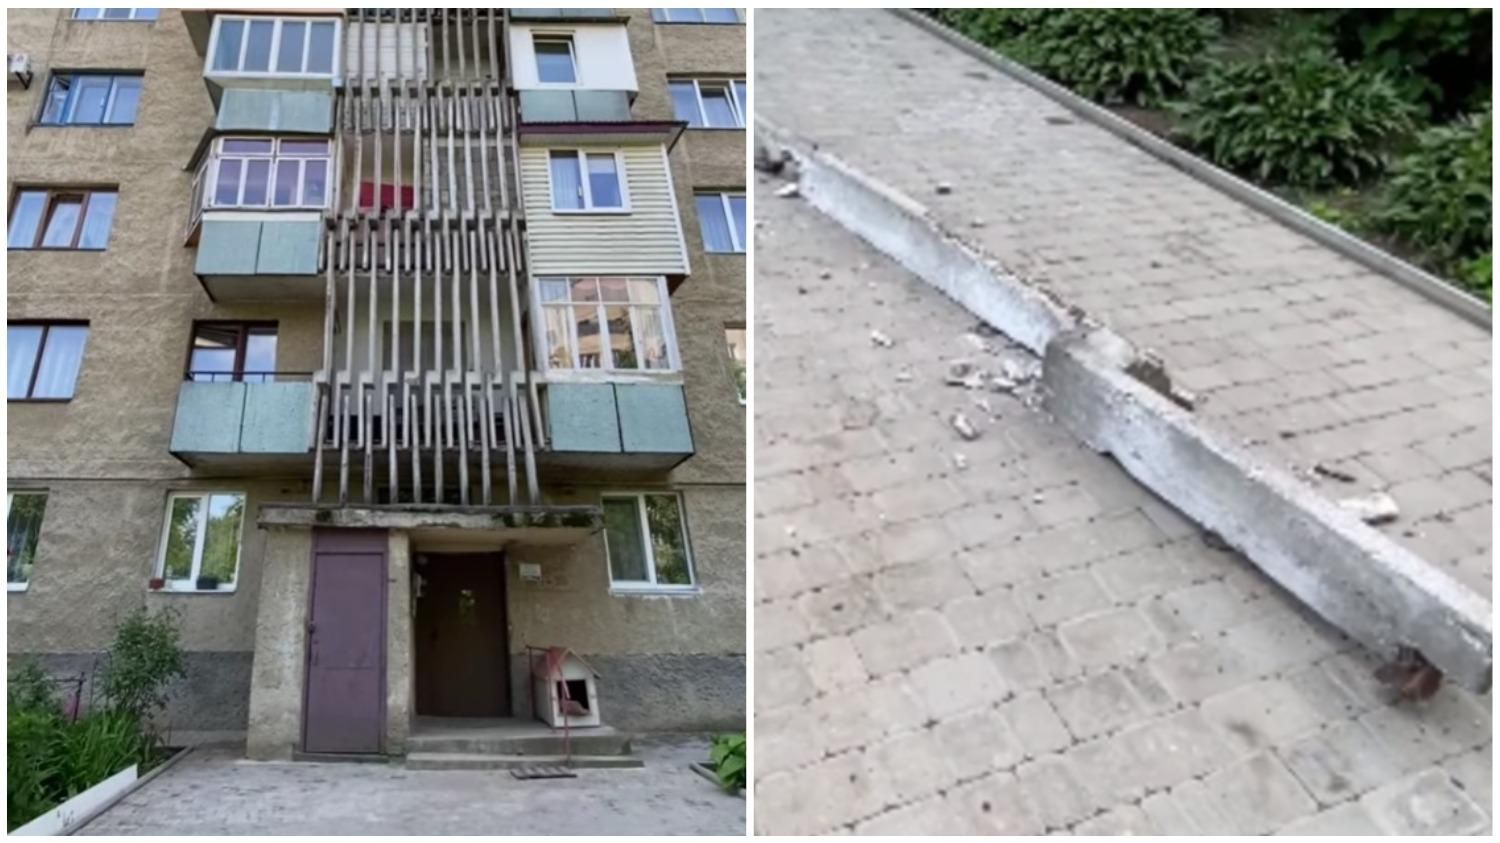 Едва не травмировал женщину: в Черновцах с многоэтажки упала бетонная балка - видео